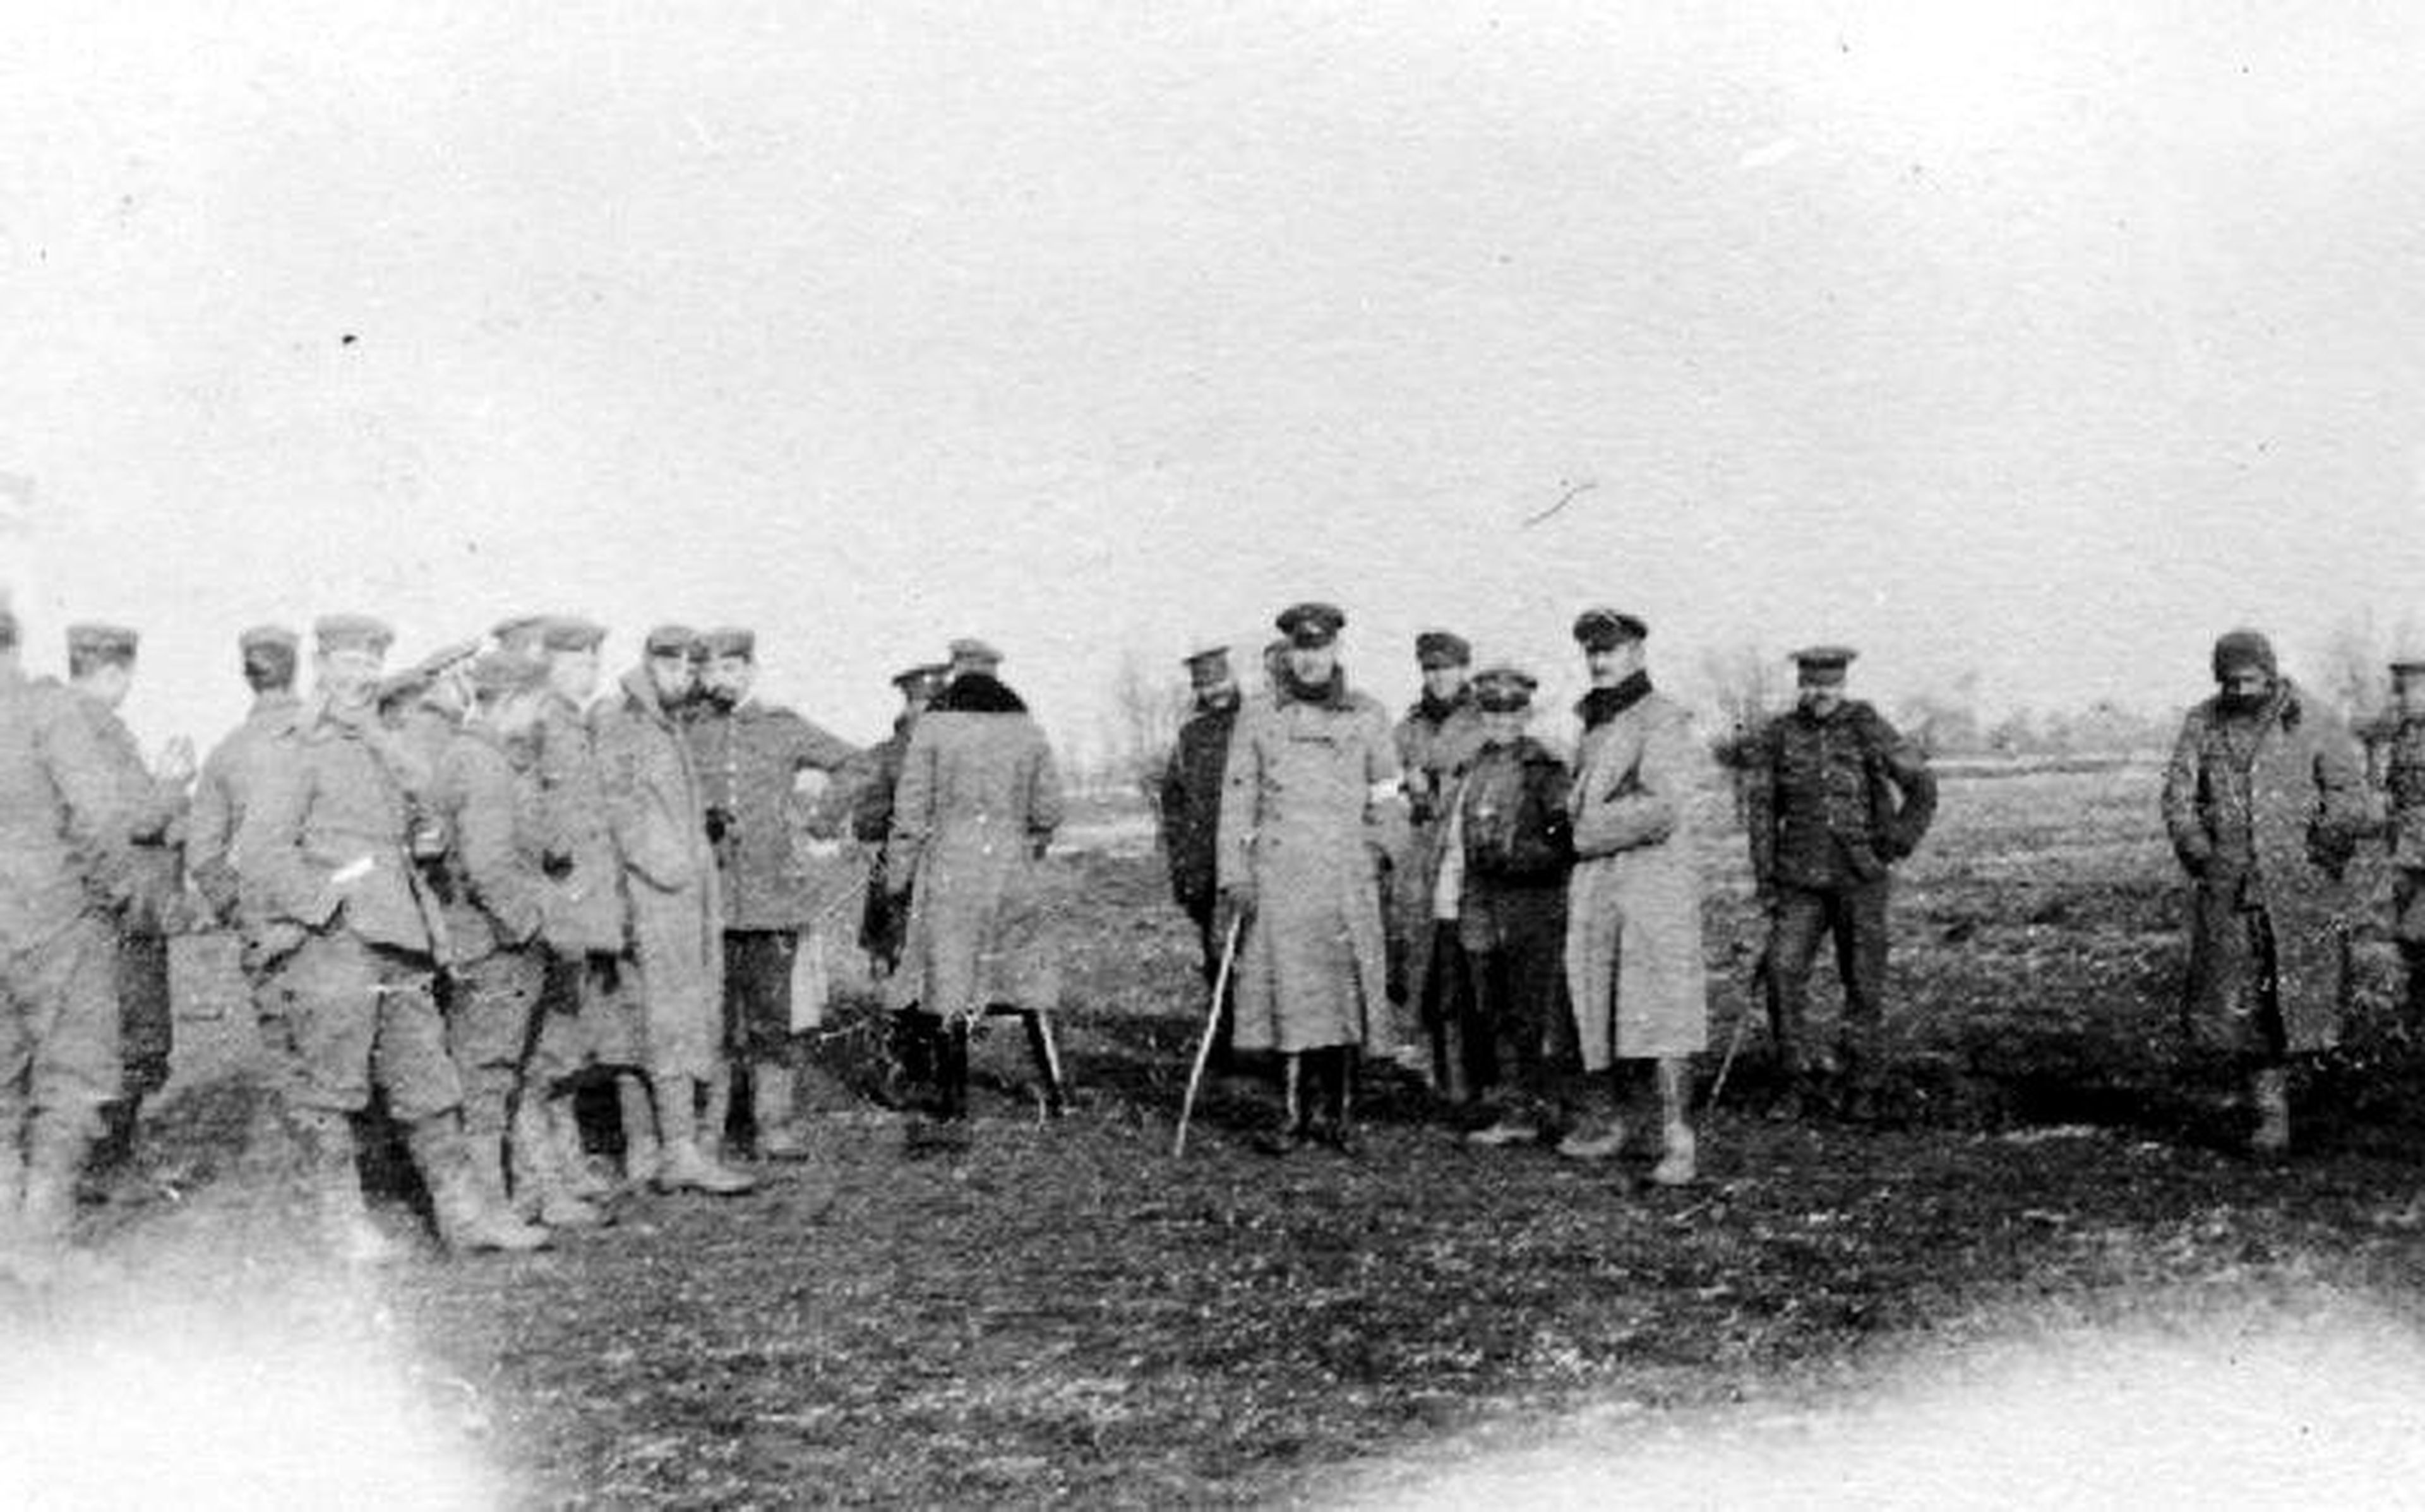 Los soldados alemanes, británicos y franceses celebran juntos la navidad el día de navidad de 1914